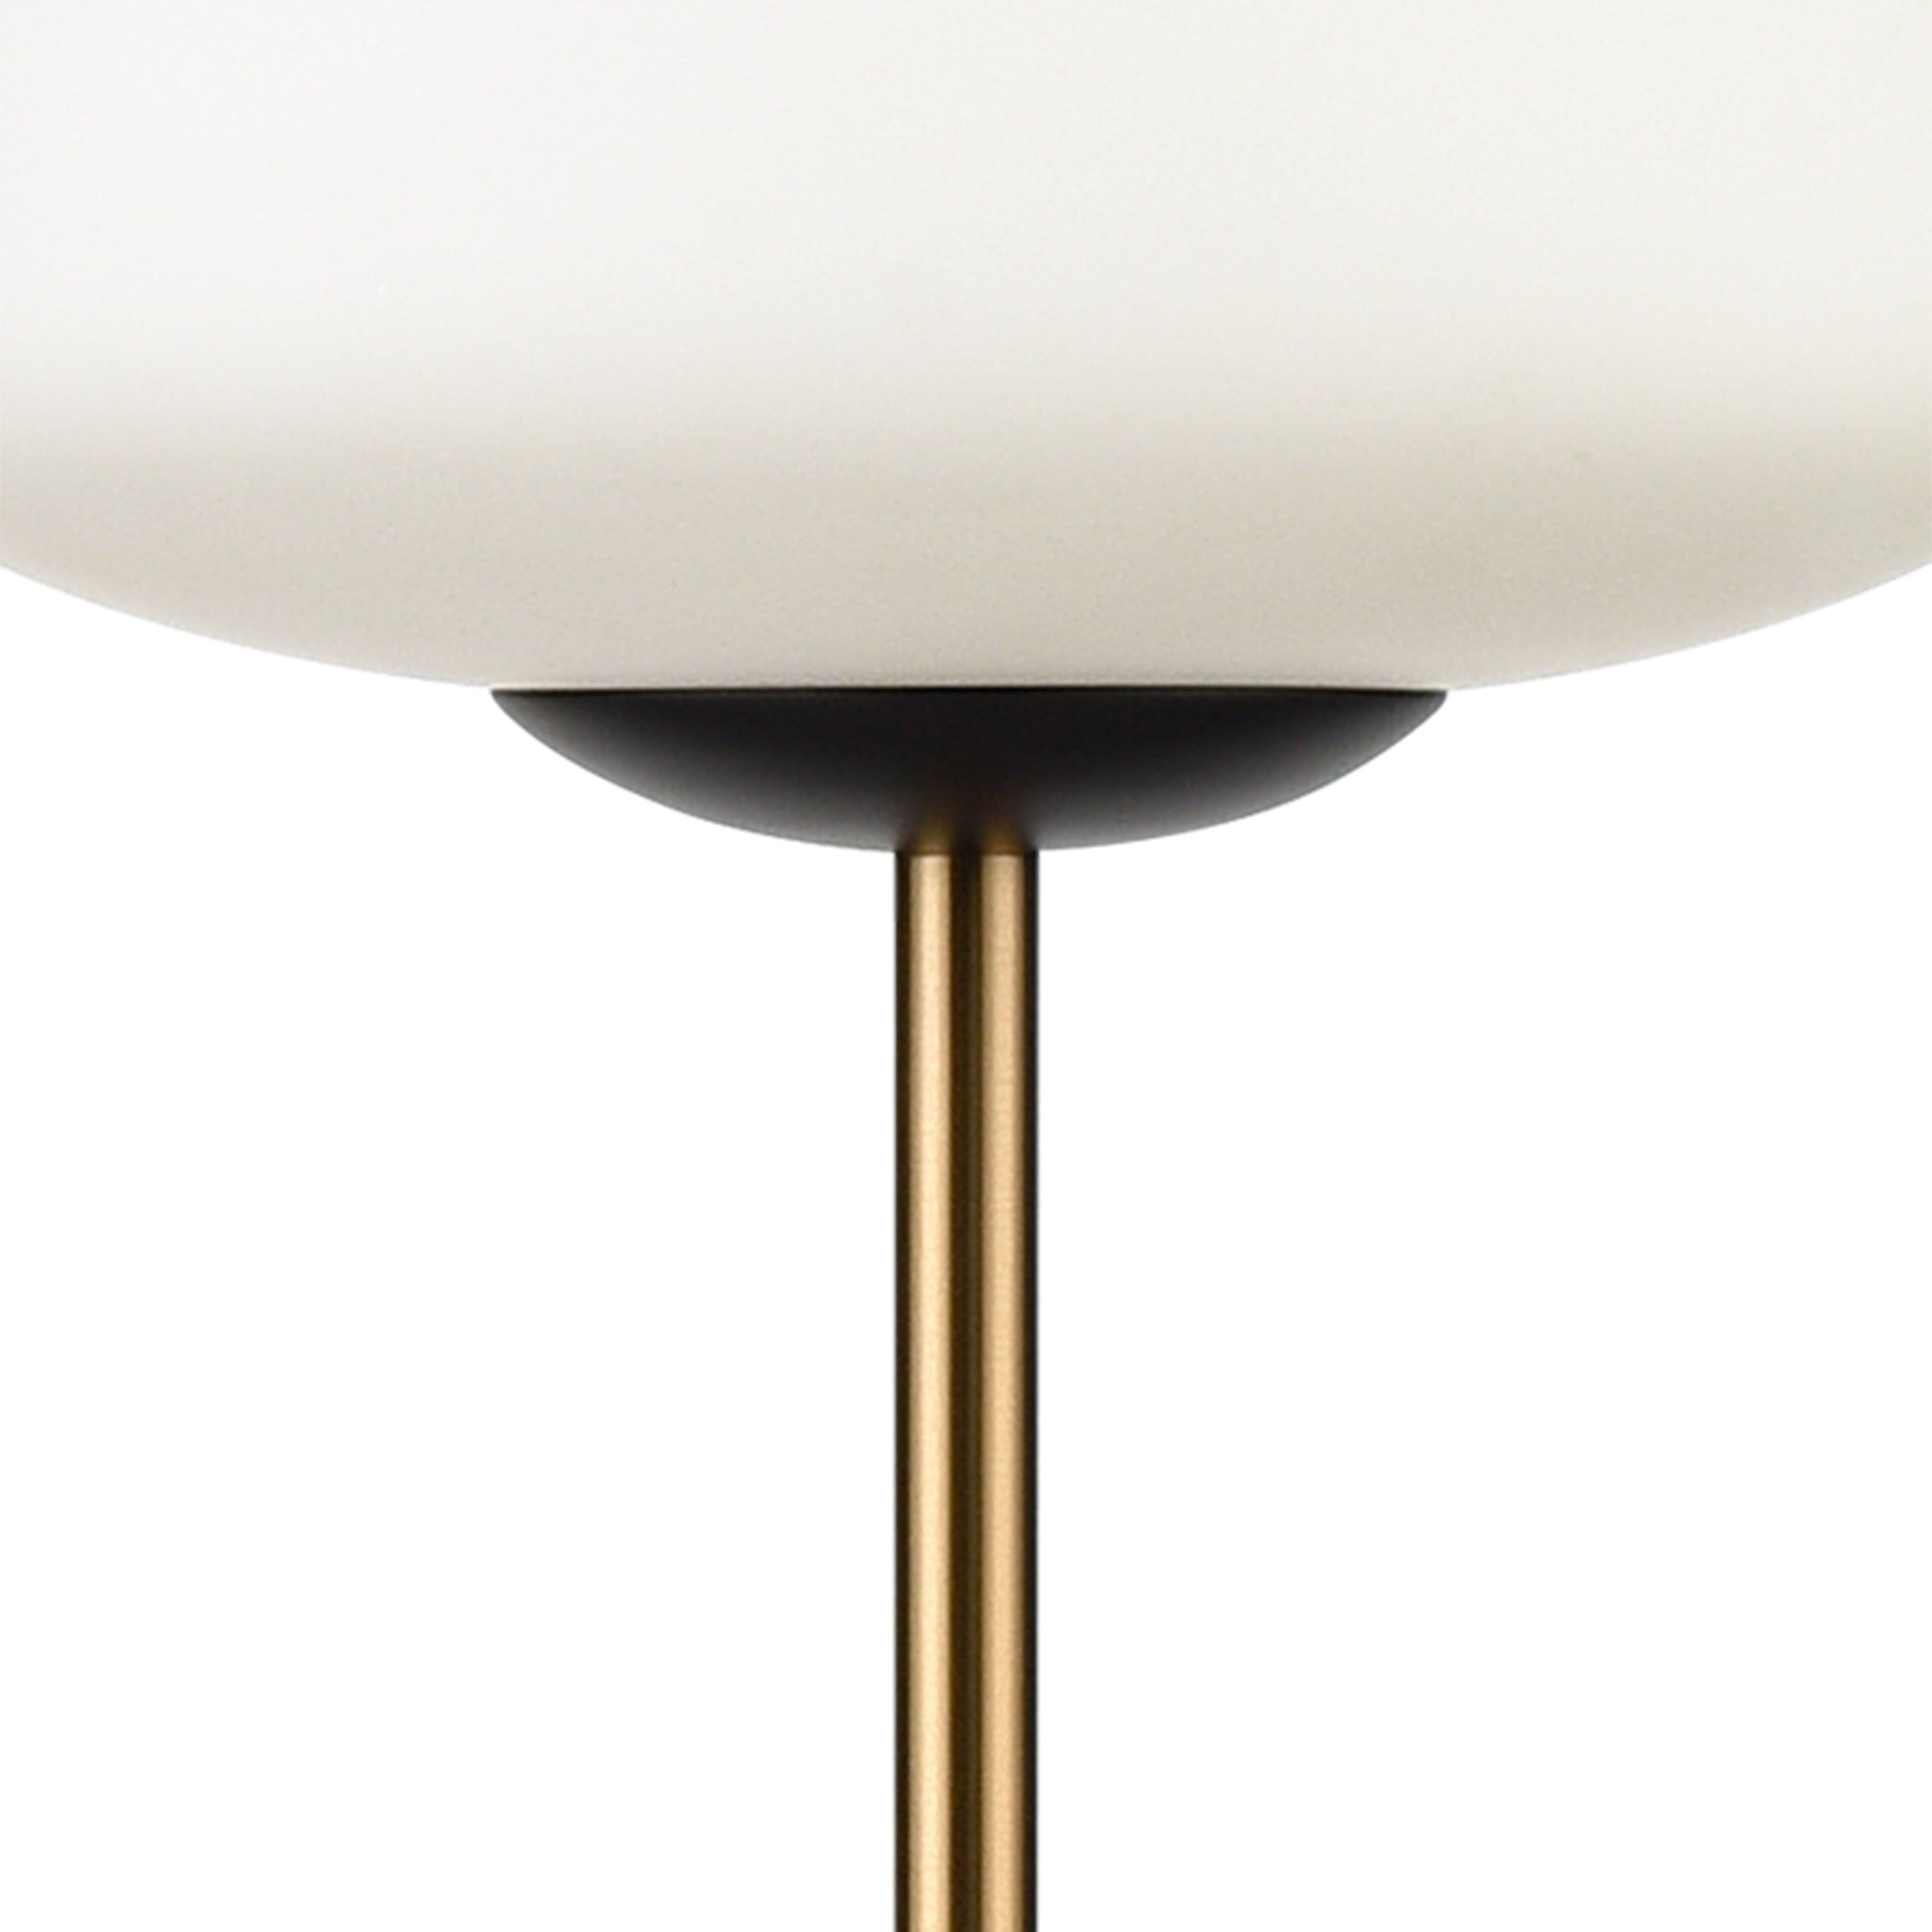 Ali Grove 62" High 1-Light Floor Lamp